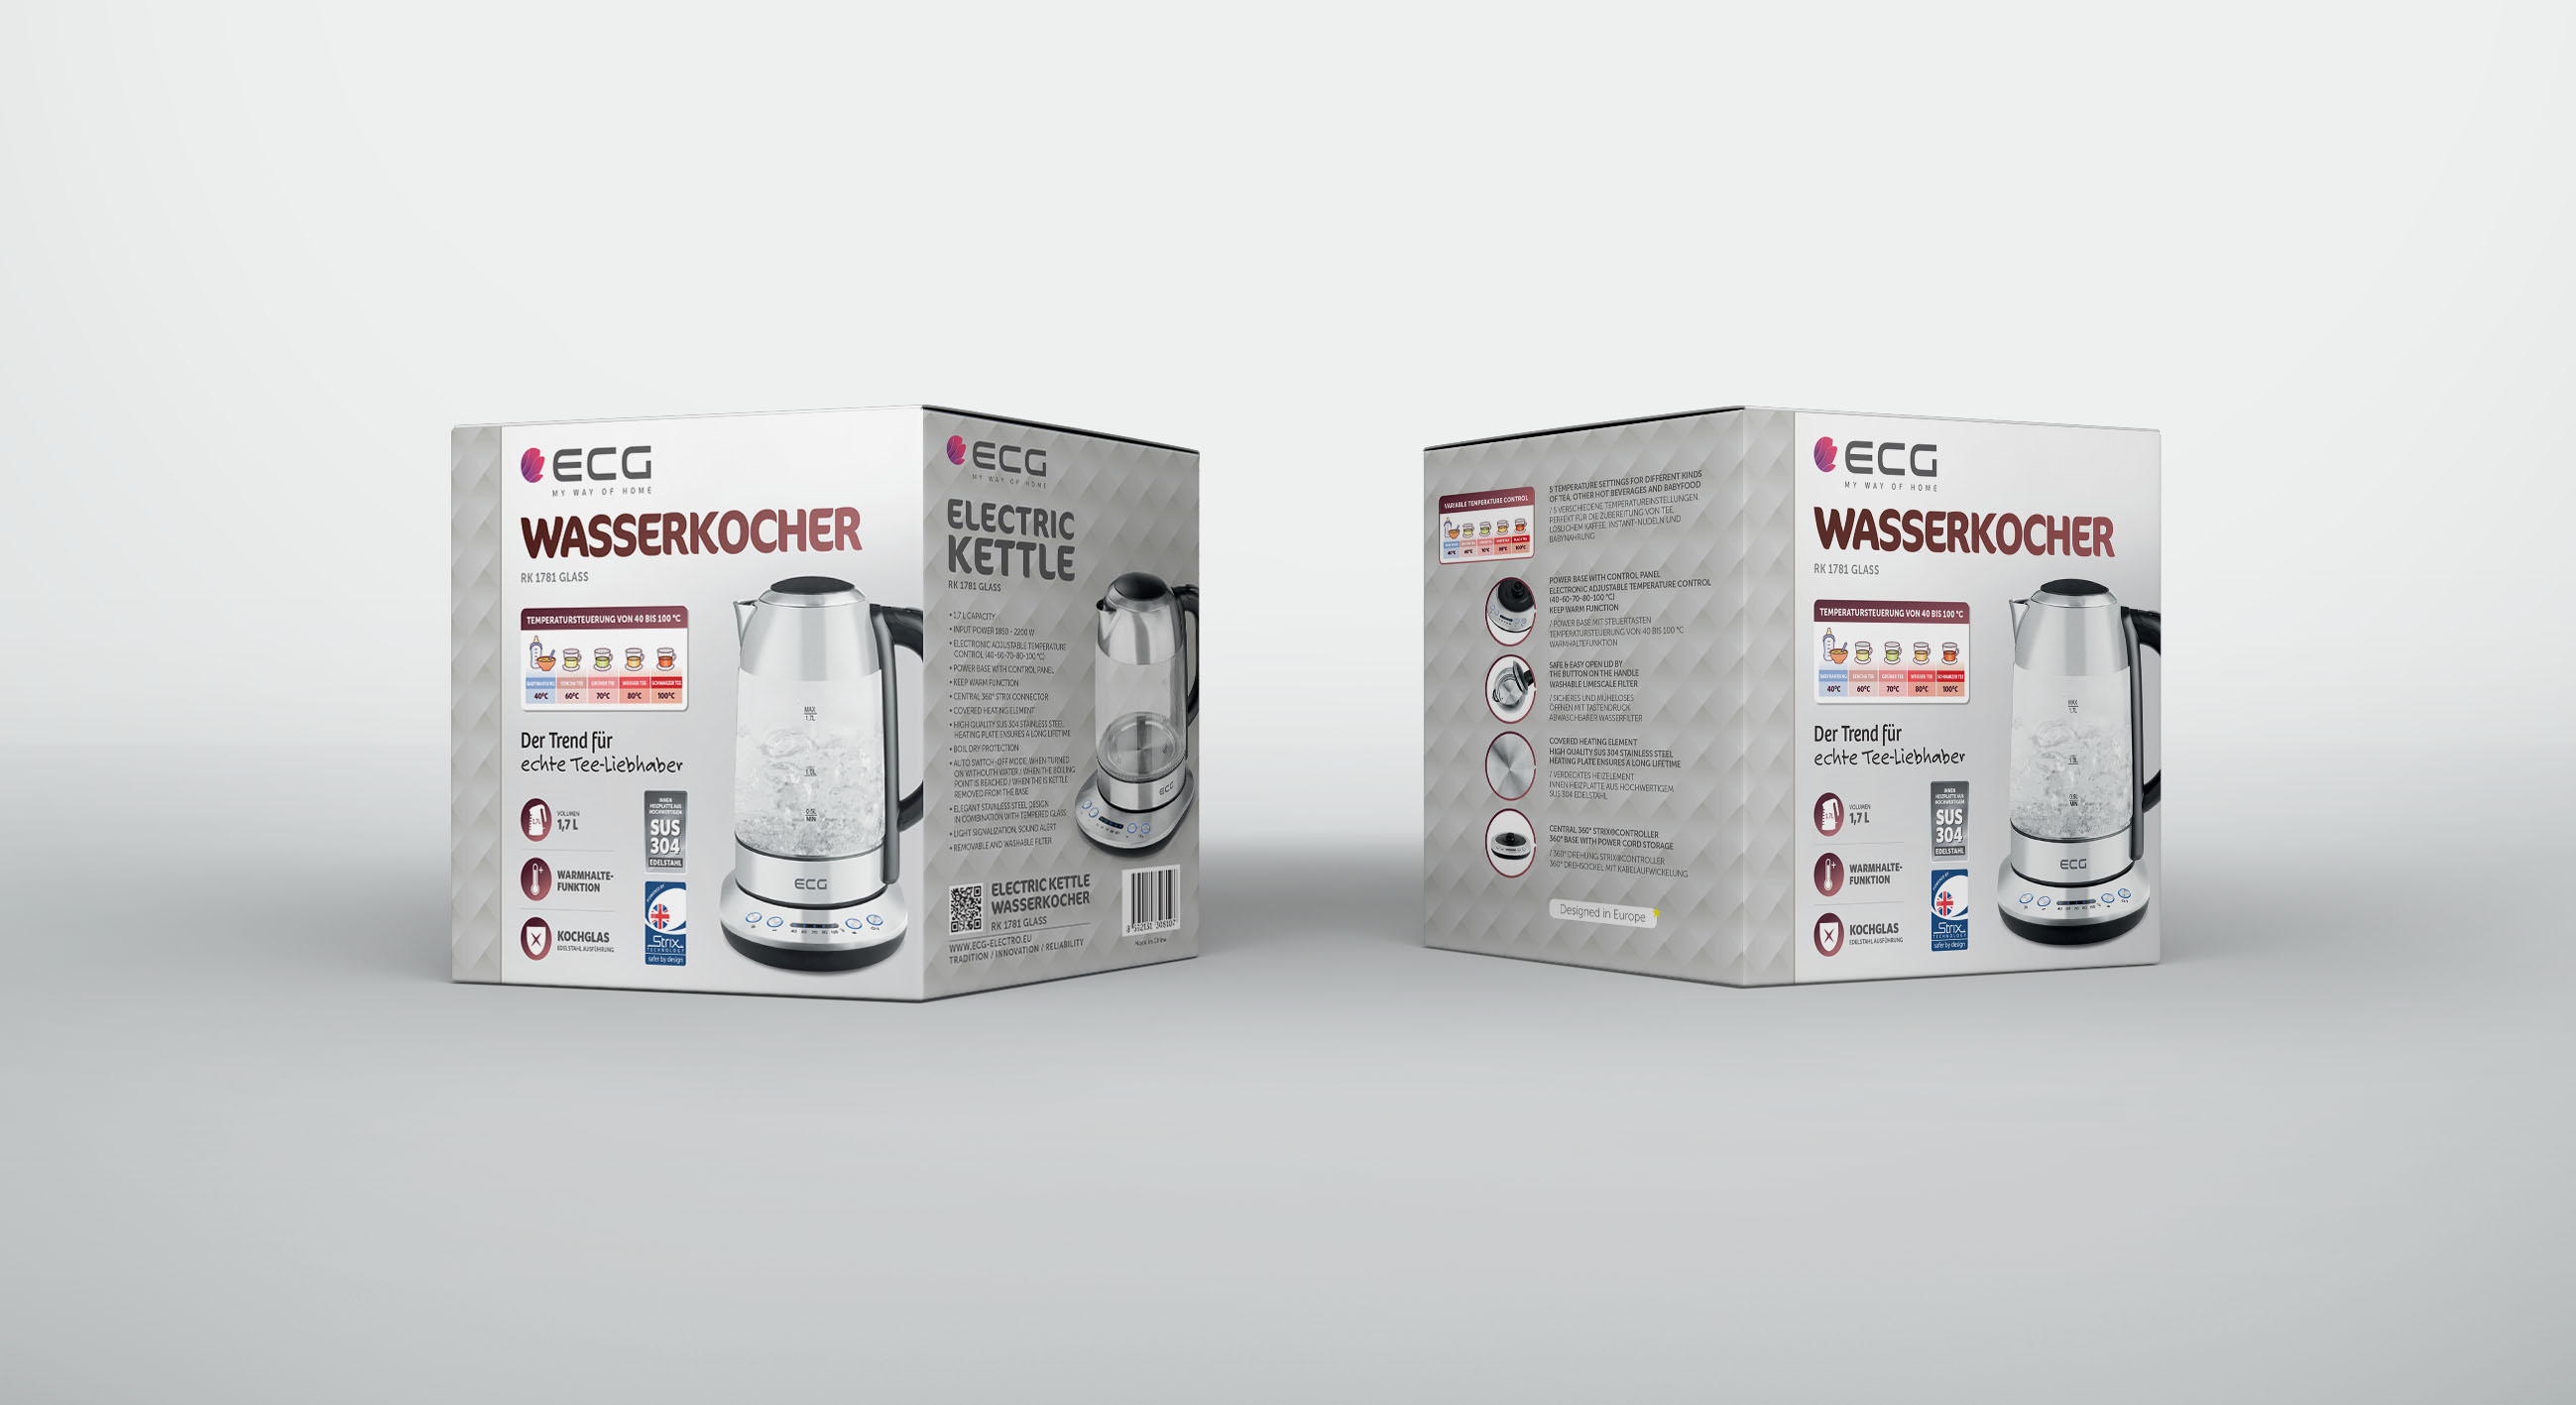 ECG heater, stainless Temperatureinstellung | Water | rostfreie | Wasserkocher Glass 1781 | RK | Warmhaltefunktion